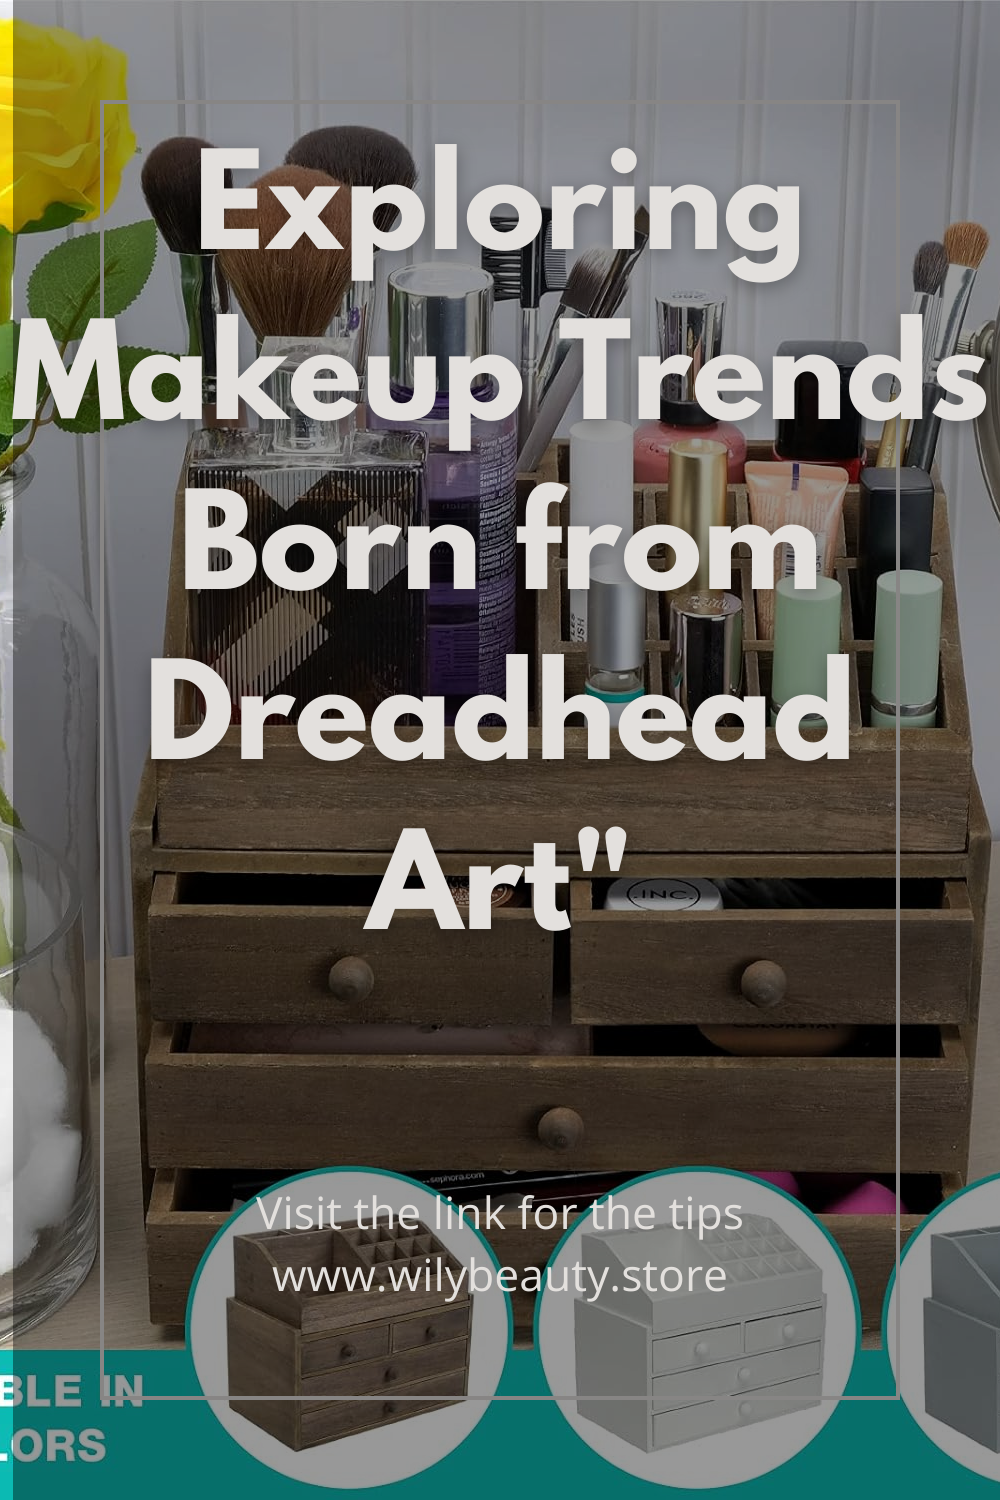 Exploring Makeup Trends Born from Dreadhead Art"